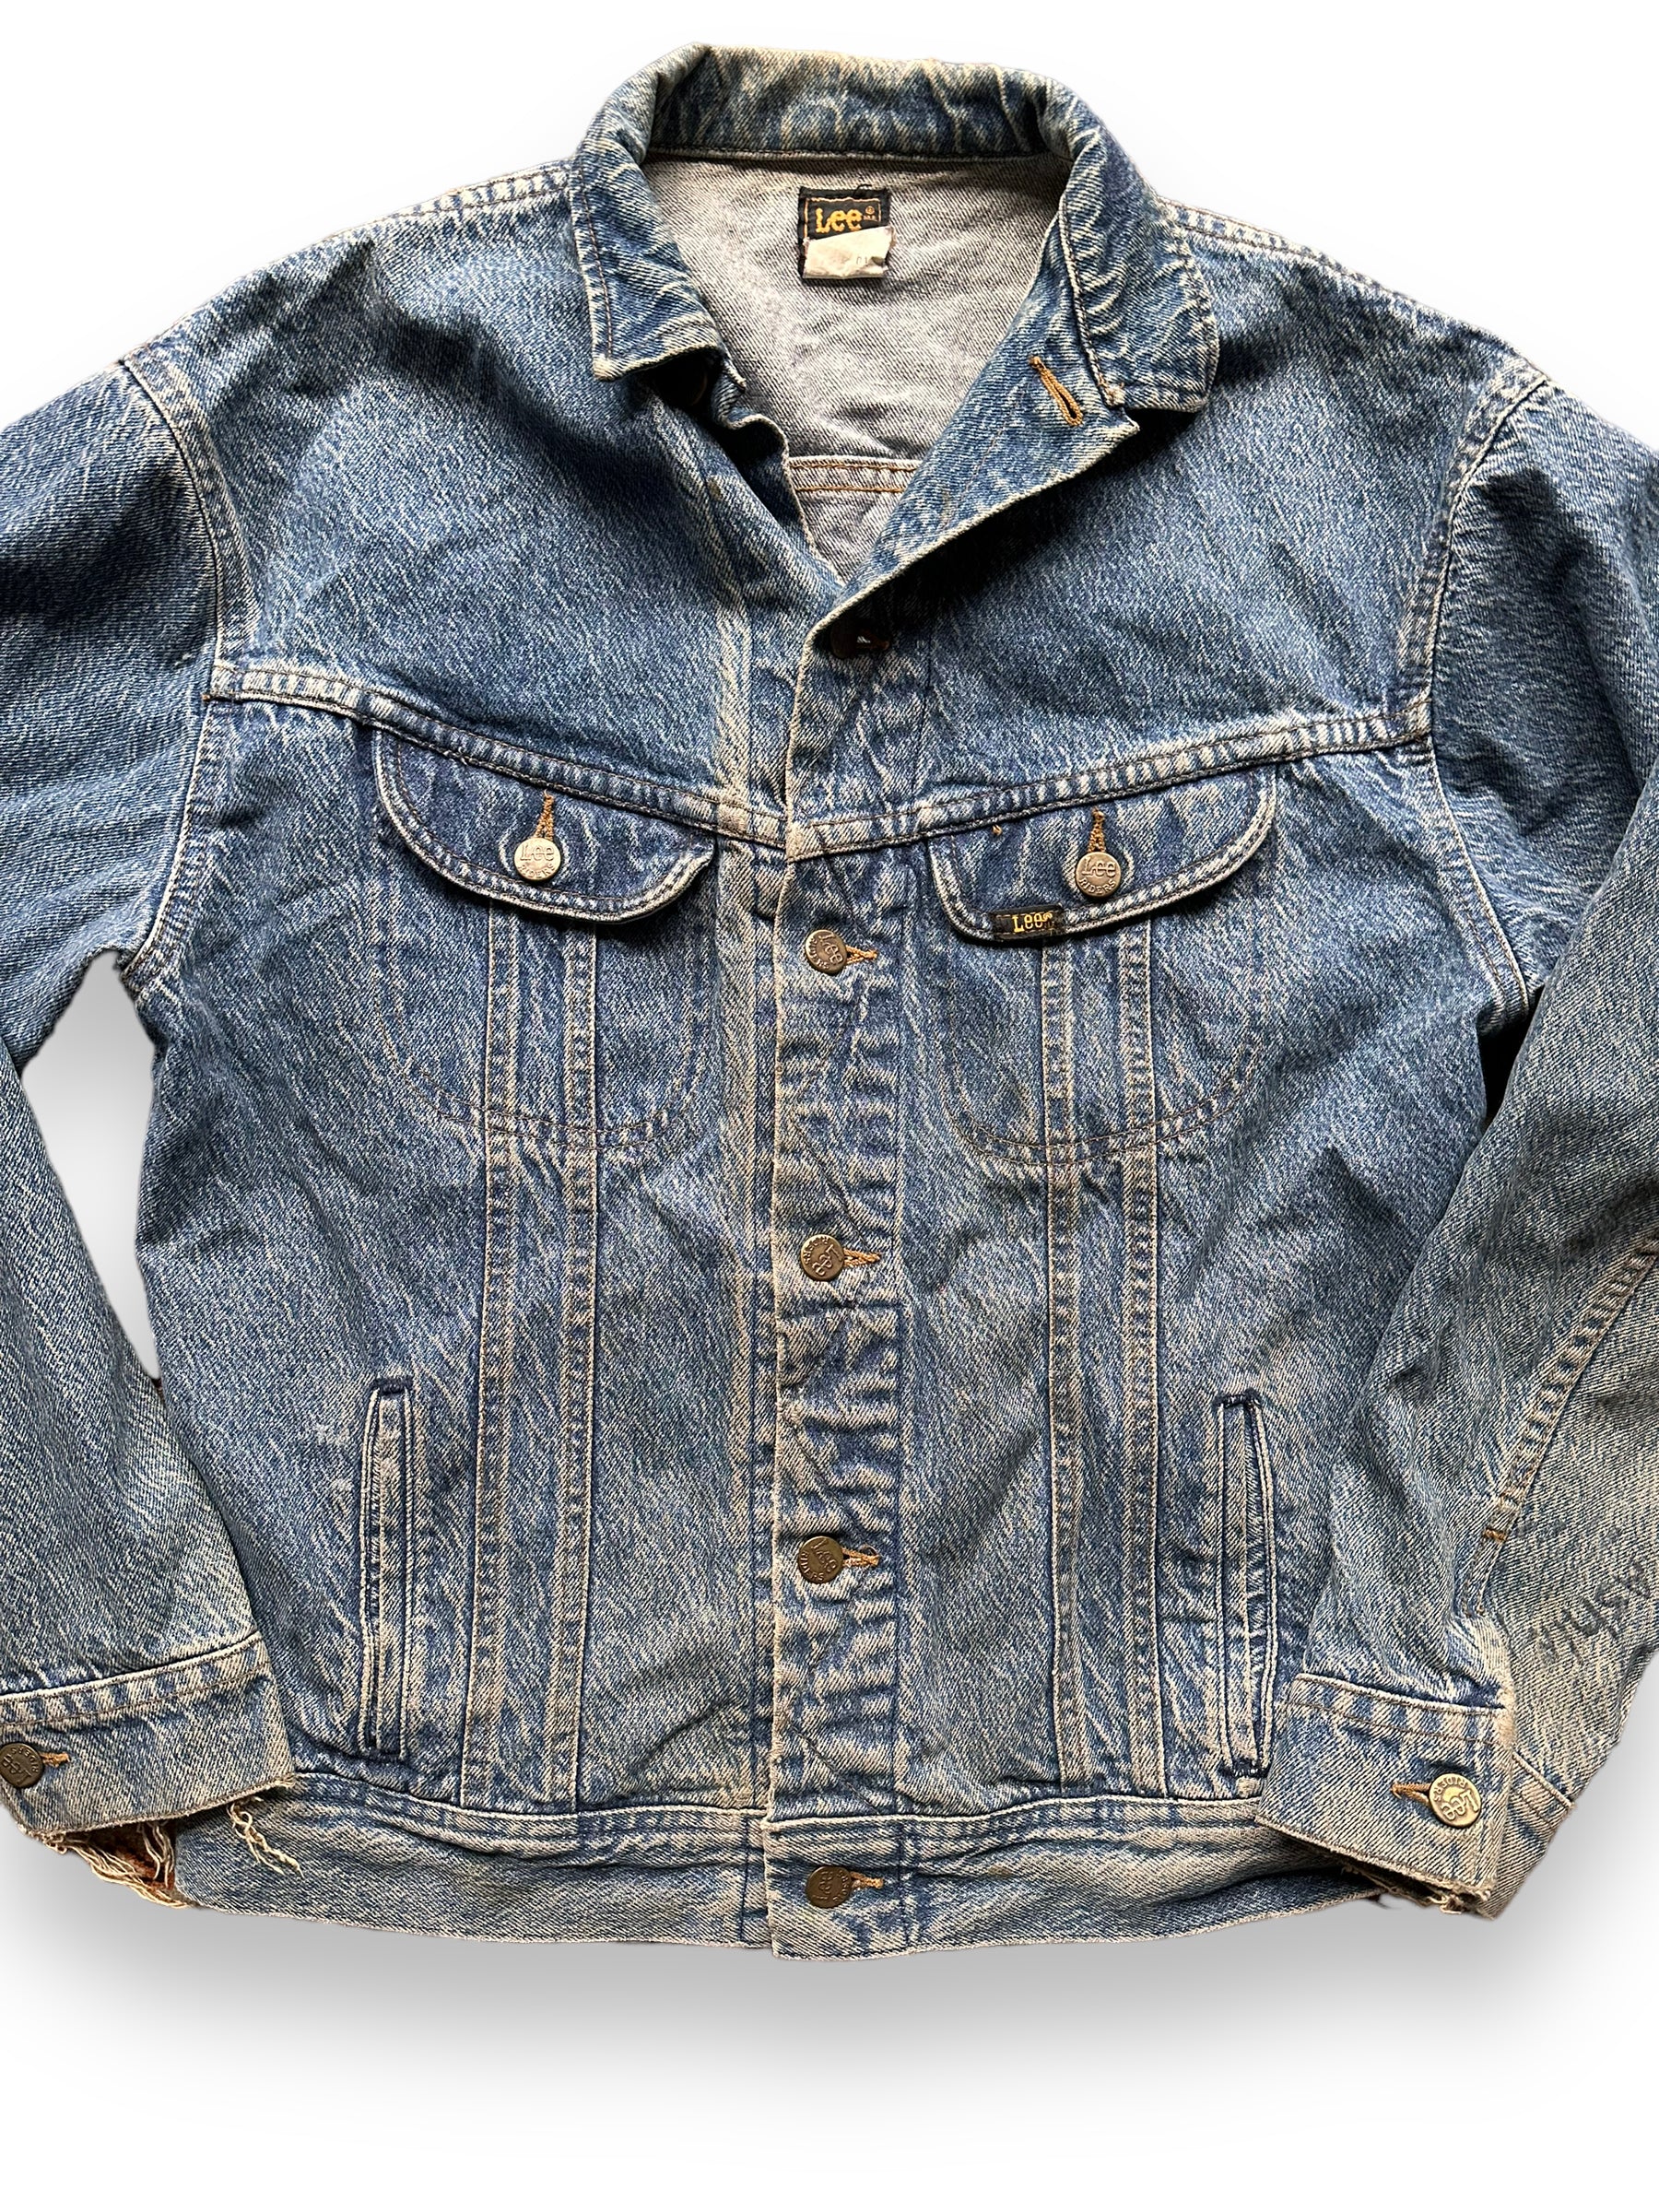 Front Detail on Vintage Lee 101-J Denim Jacket SZ XL | Vintage Denim Workwear Seattle | Seattle Vintage Denim